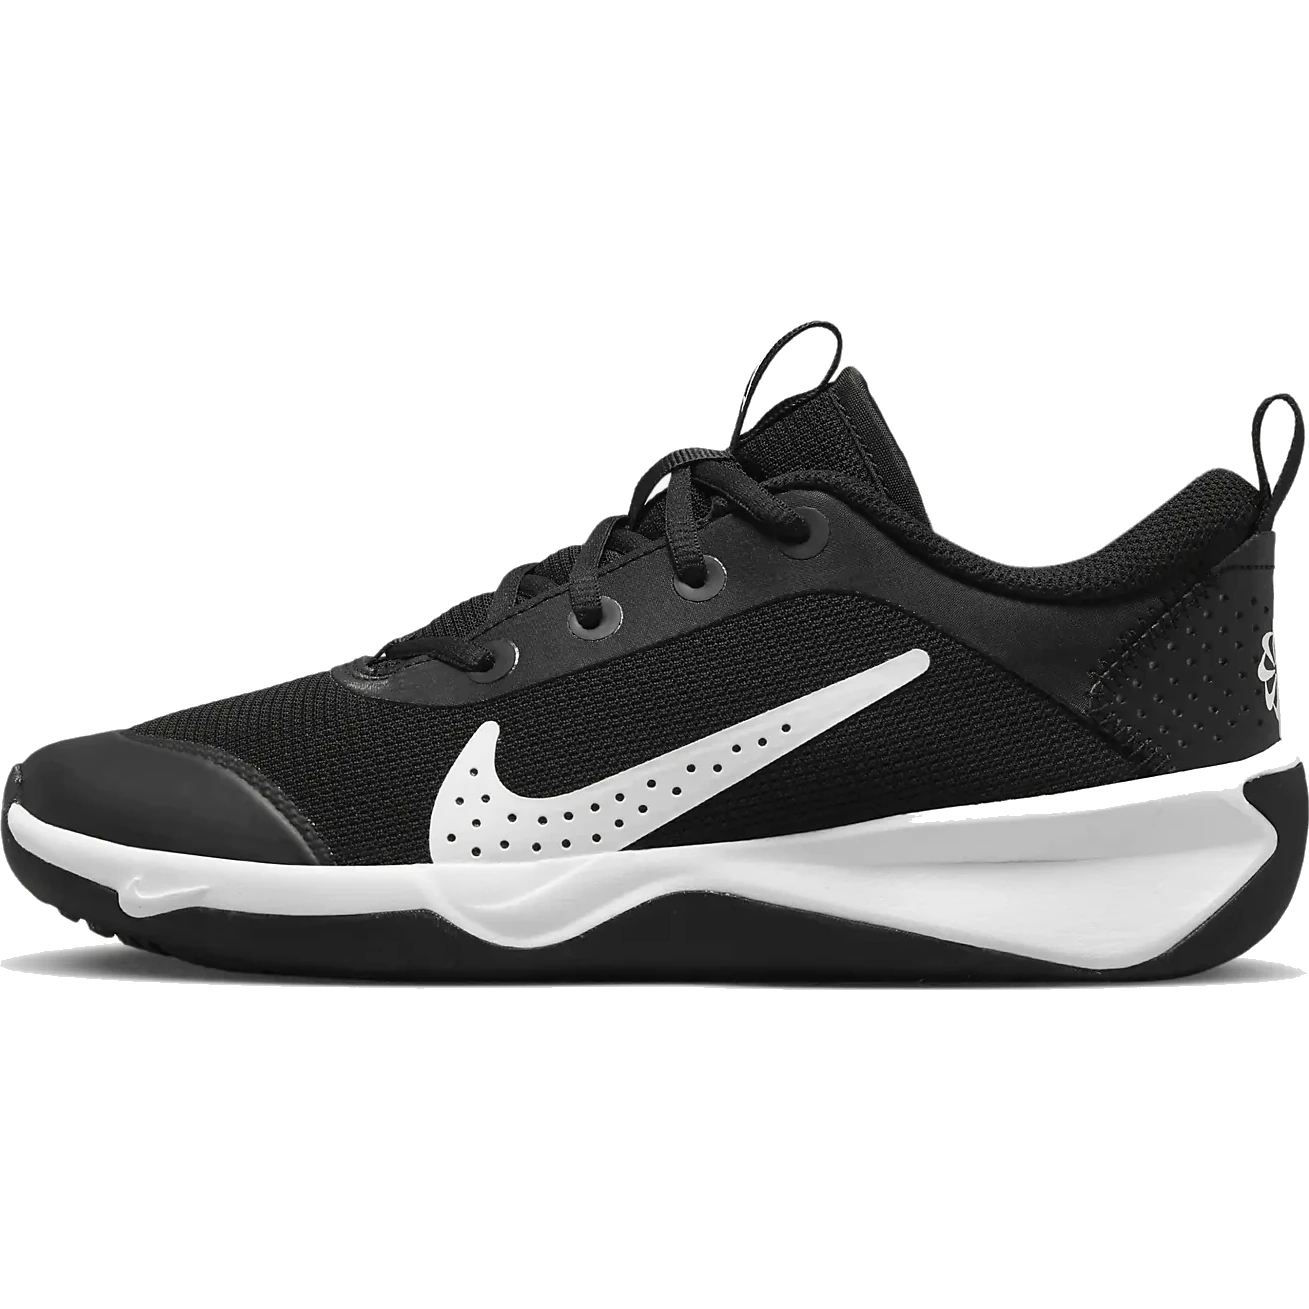 Productfoto van Nike Omni Multi-Court Indoorschoenen Kinderen - zwart/wit DM9027-002